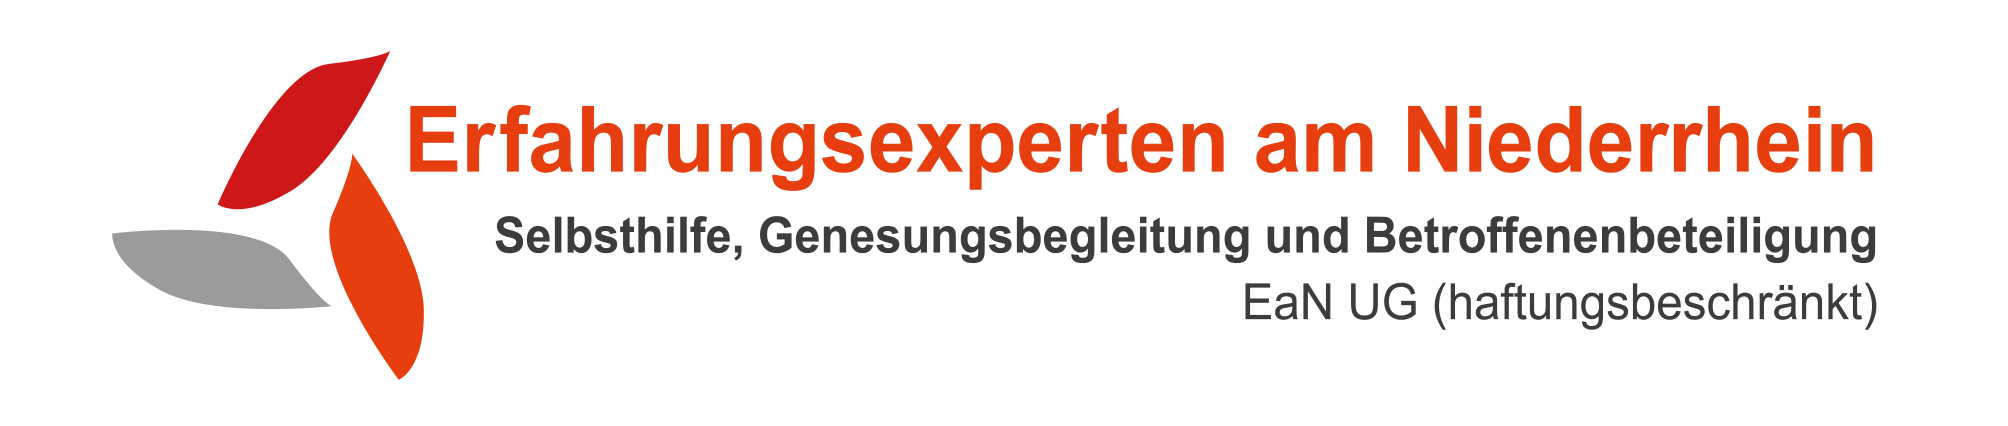 Erfahrungsexperten am Niederrhein